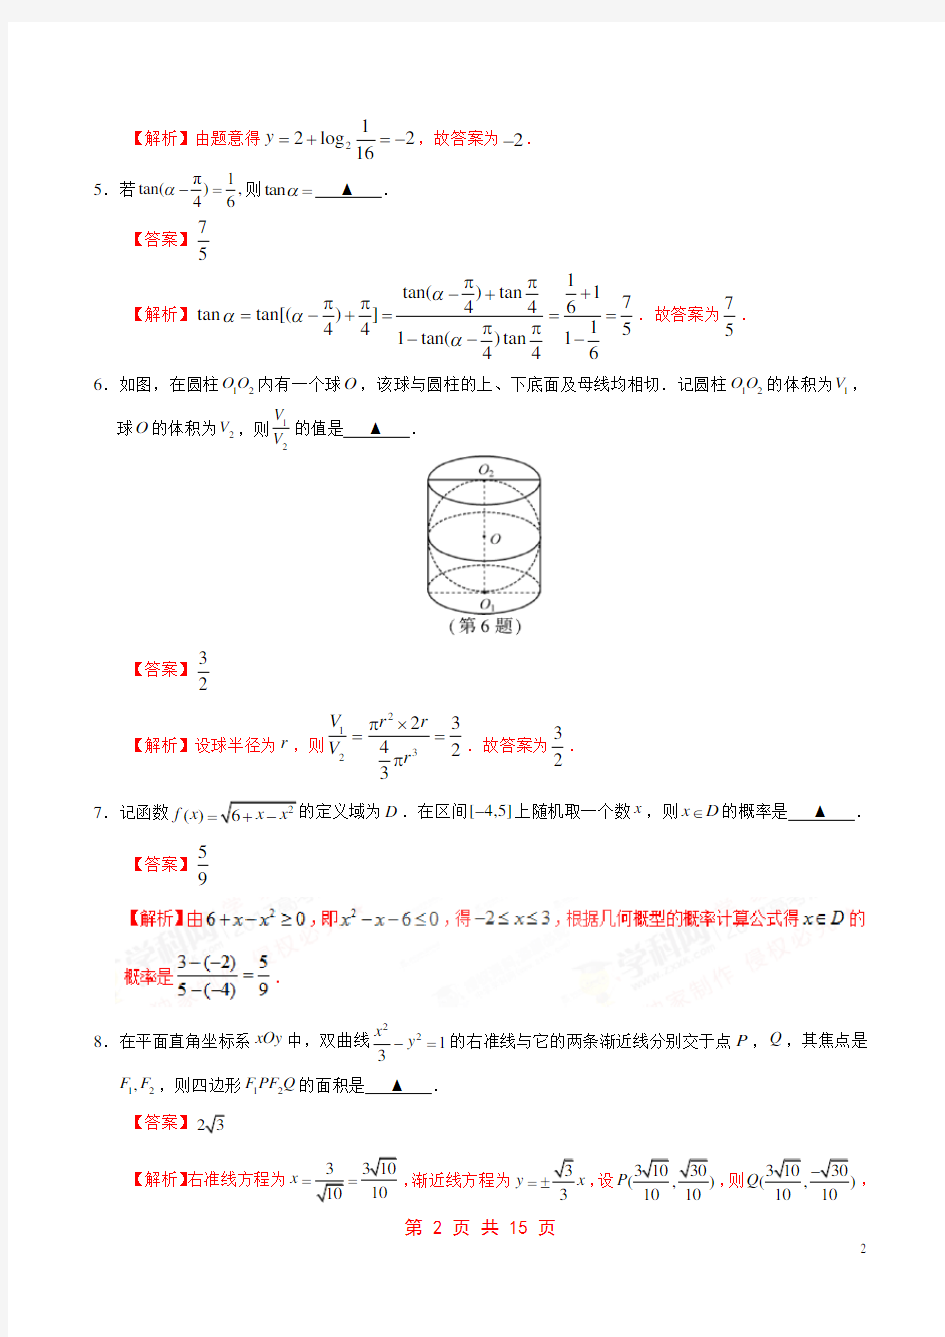 2017年高考江苏卷数学试题解析(正式版)(解析版)